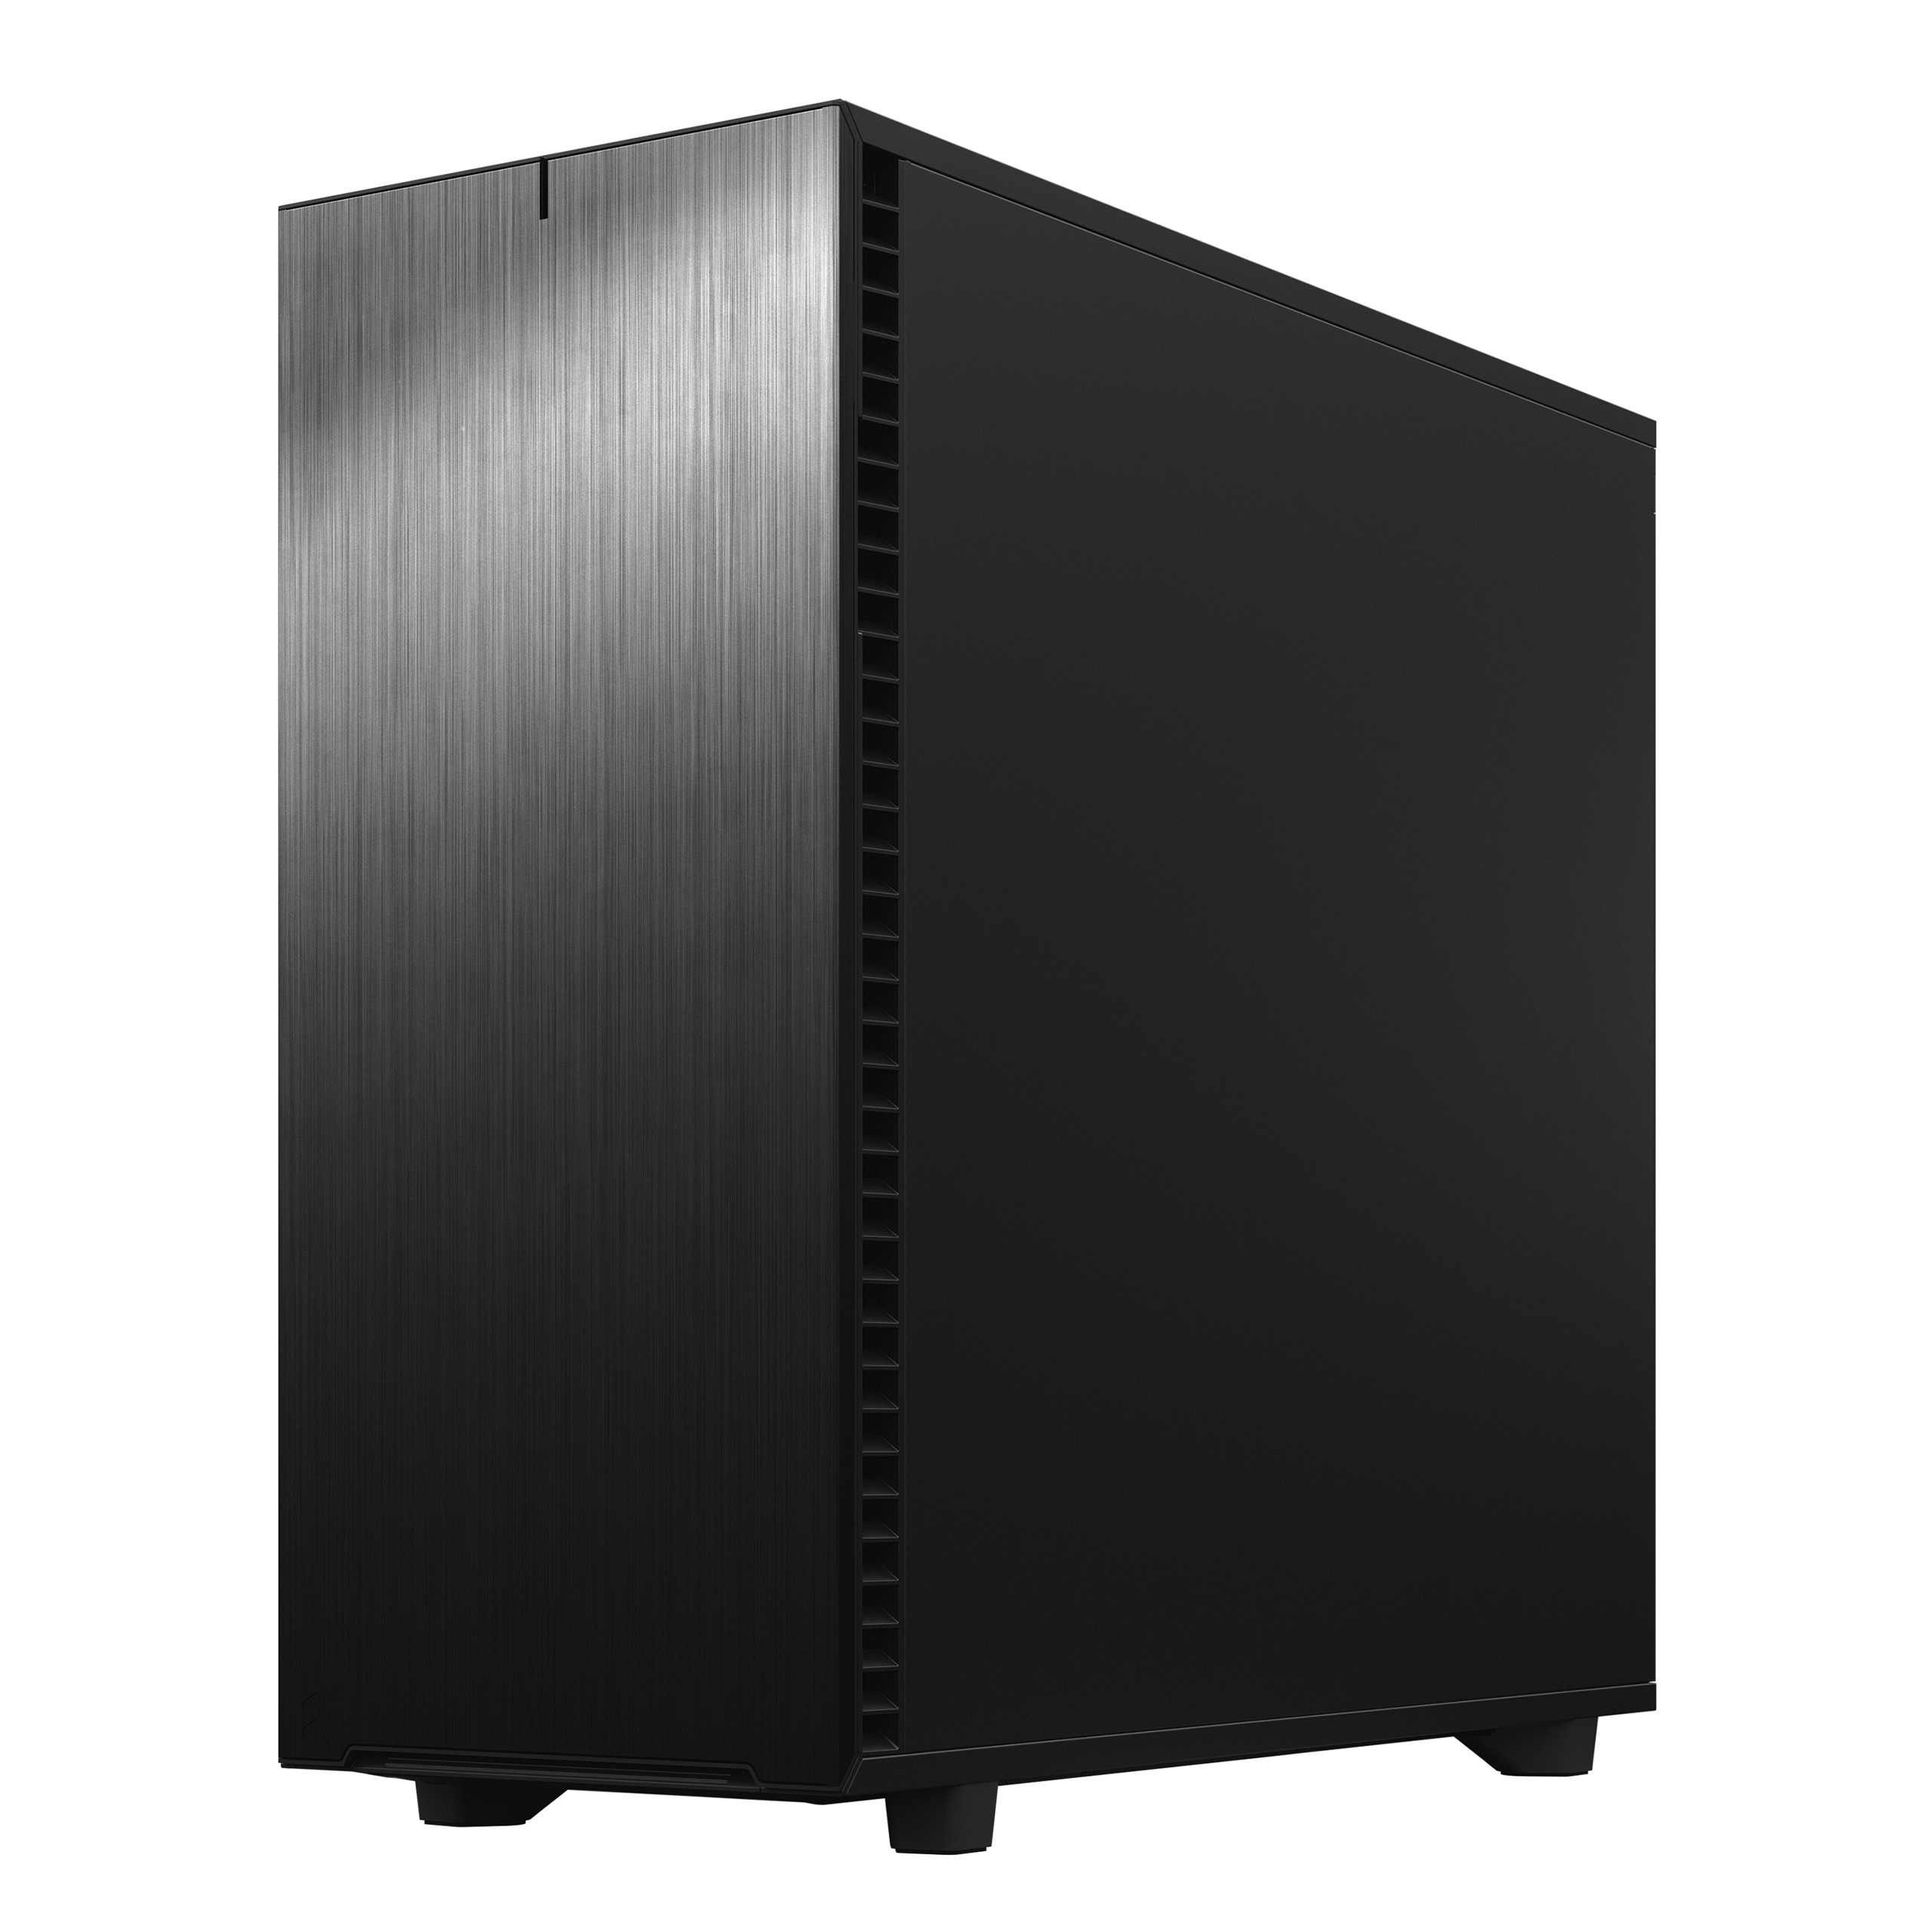 Obrázek Fractal Design Define 7 XL Black Solid/Big Tower/Černá